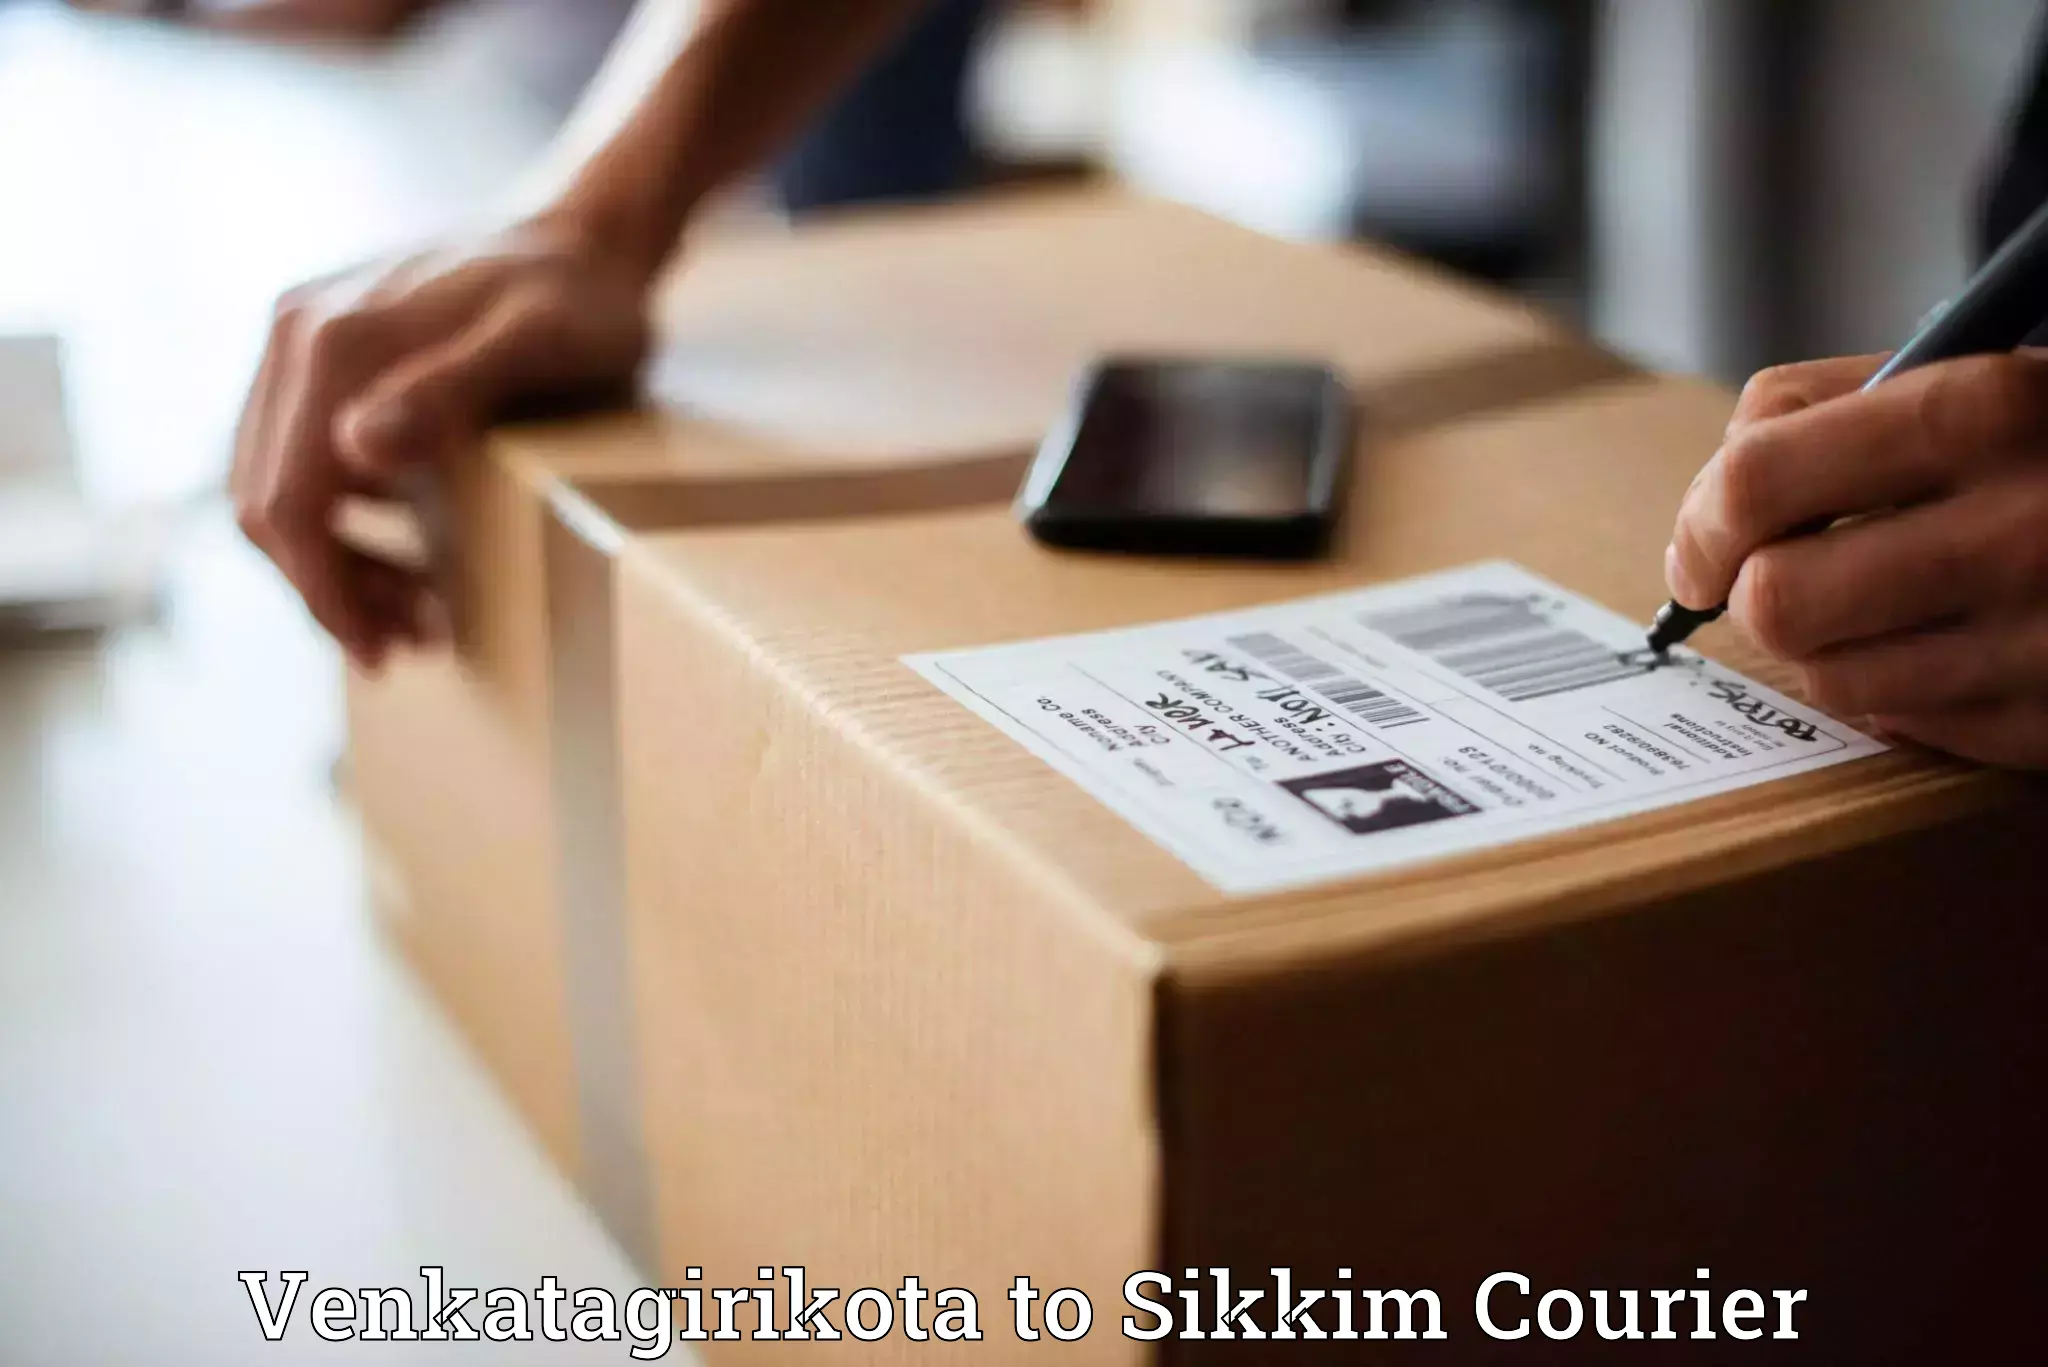 Urban courier service Venkatagirikota to East Sikkim